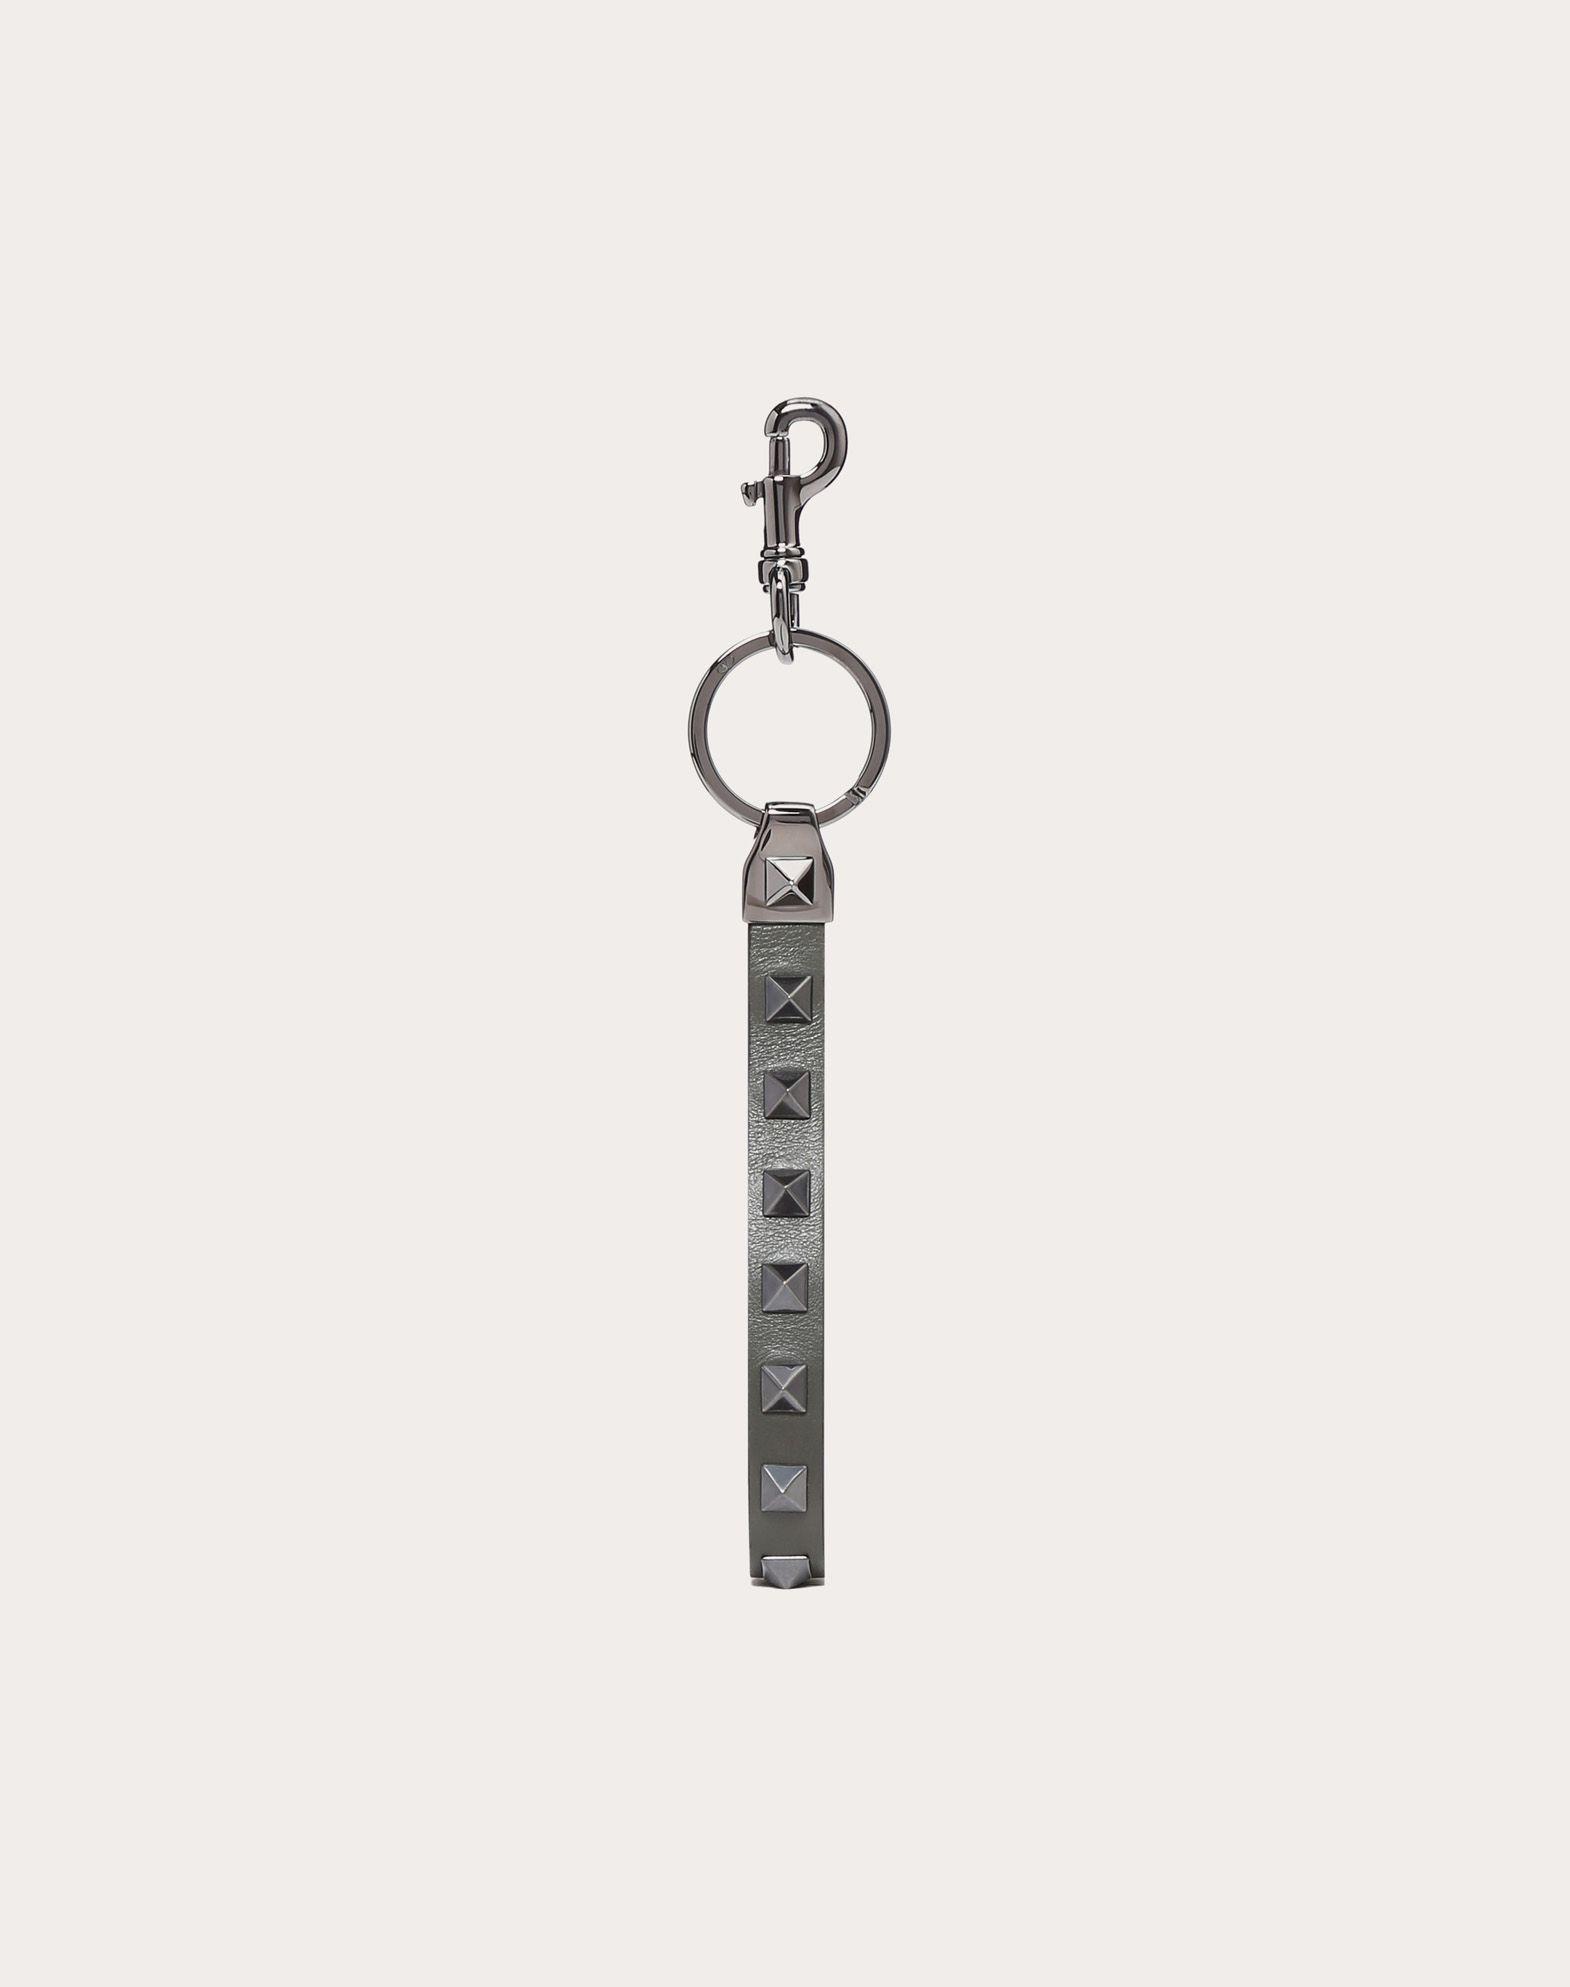 Valentino Garavani Rockstud Keychain for Men - Lyst